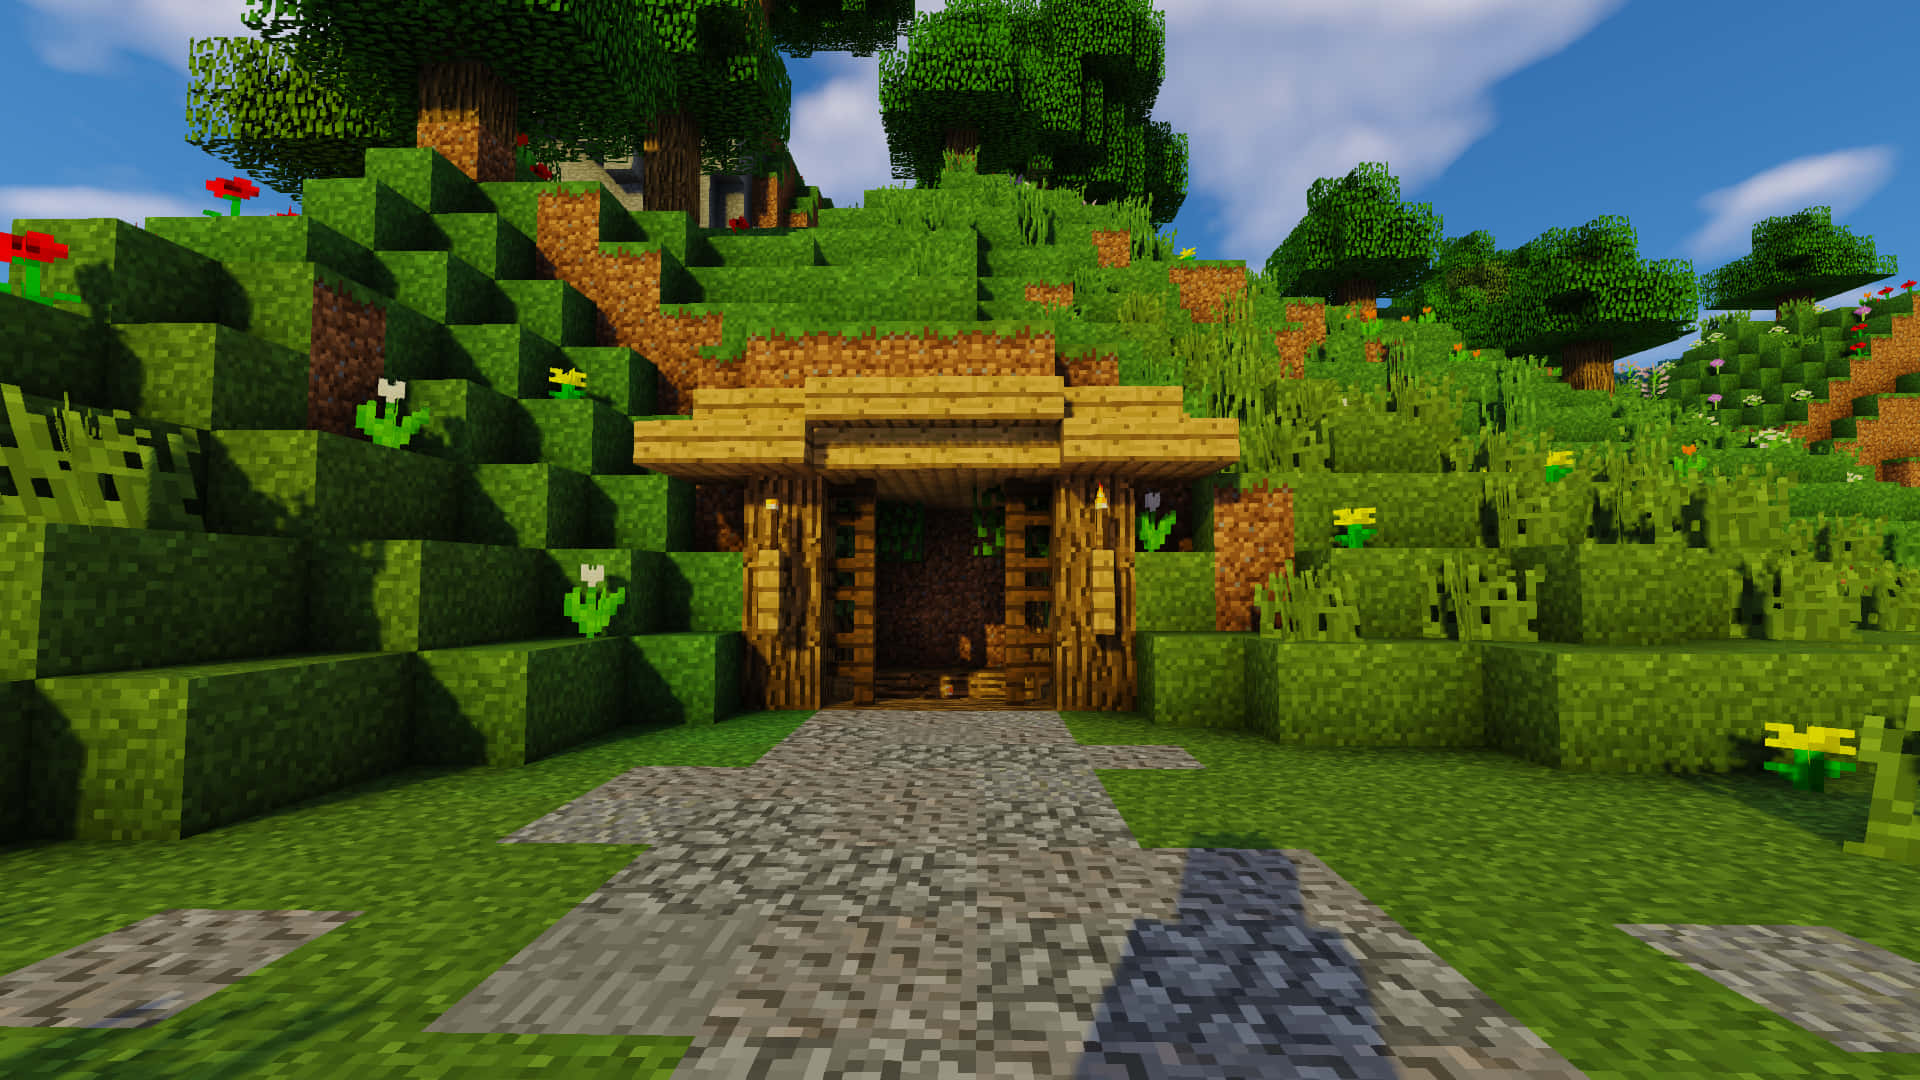 Imagende La Puerta De Una Casa En Minecraft